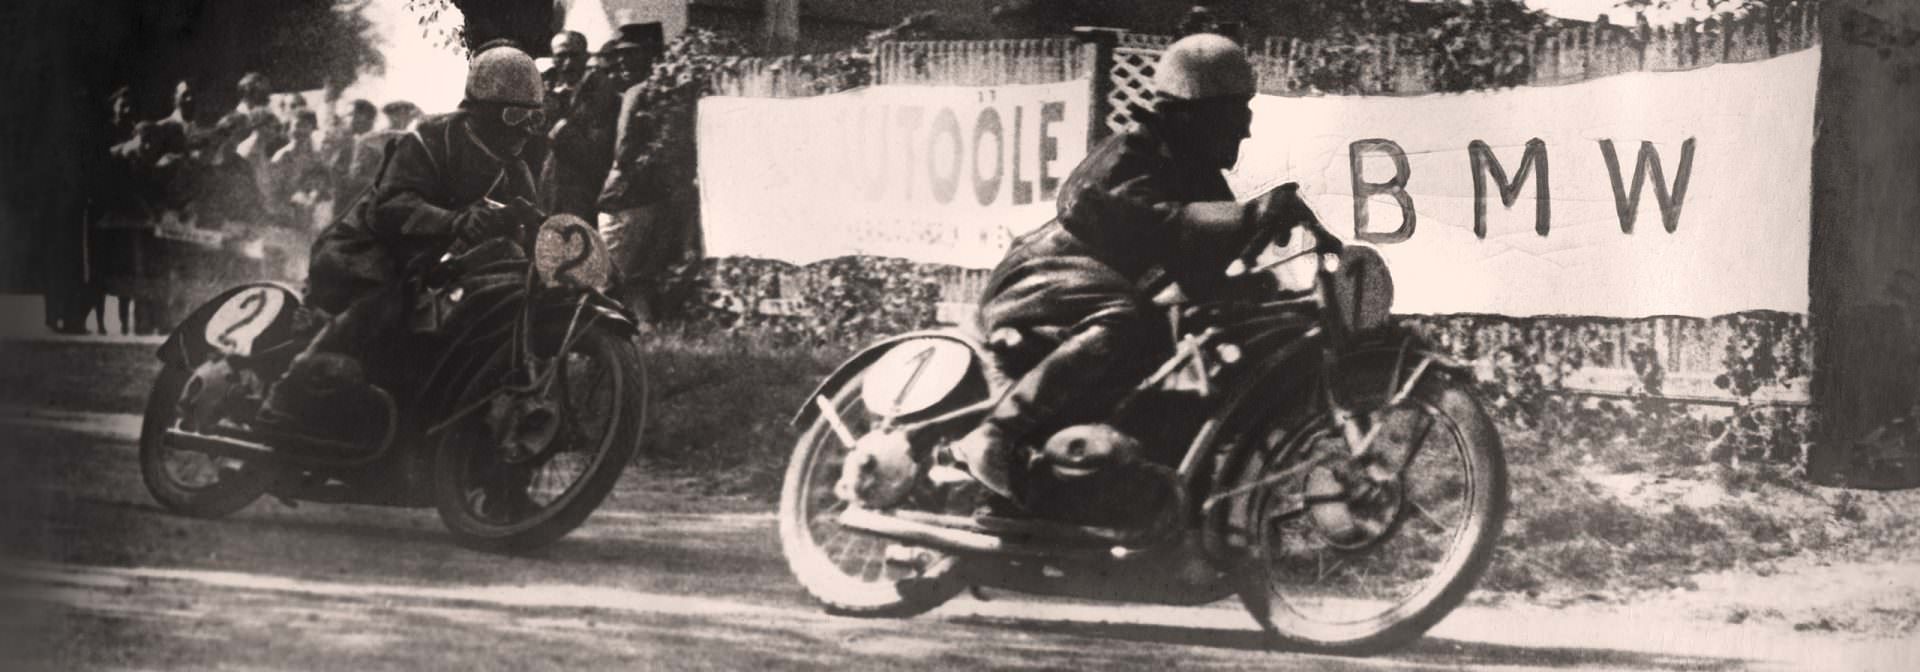 Vintage černobílá fotografie raných motocyklových závodů BMW. Dva jezdci na motocyklech jsou zobrazeni, jak závodí na trati, s transparentem BMW v pozadí.